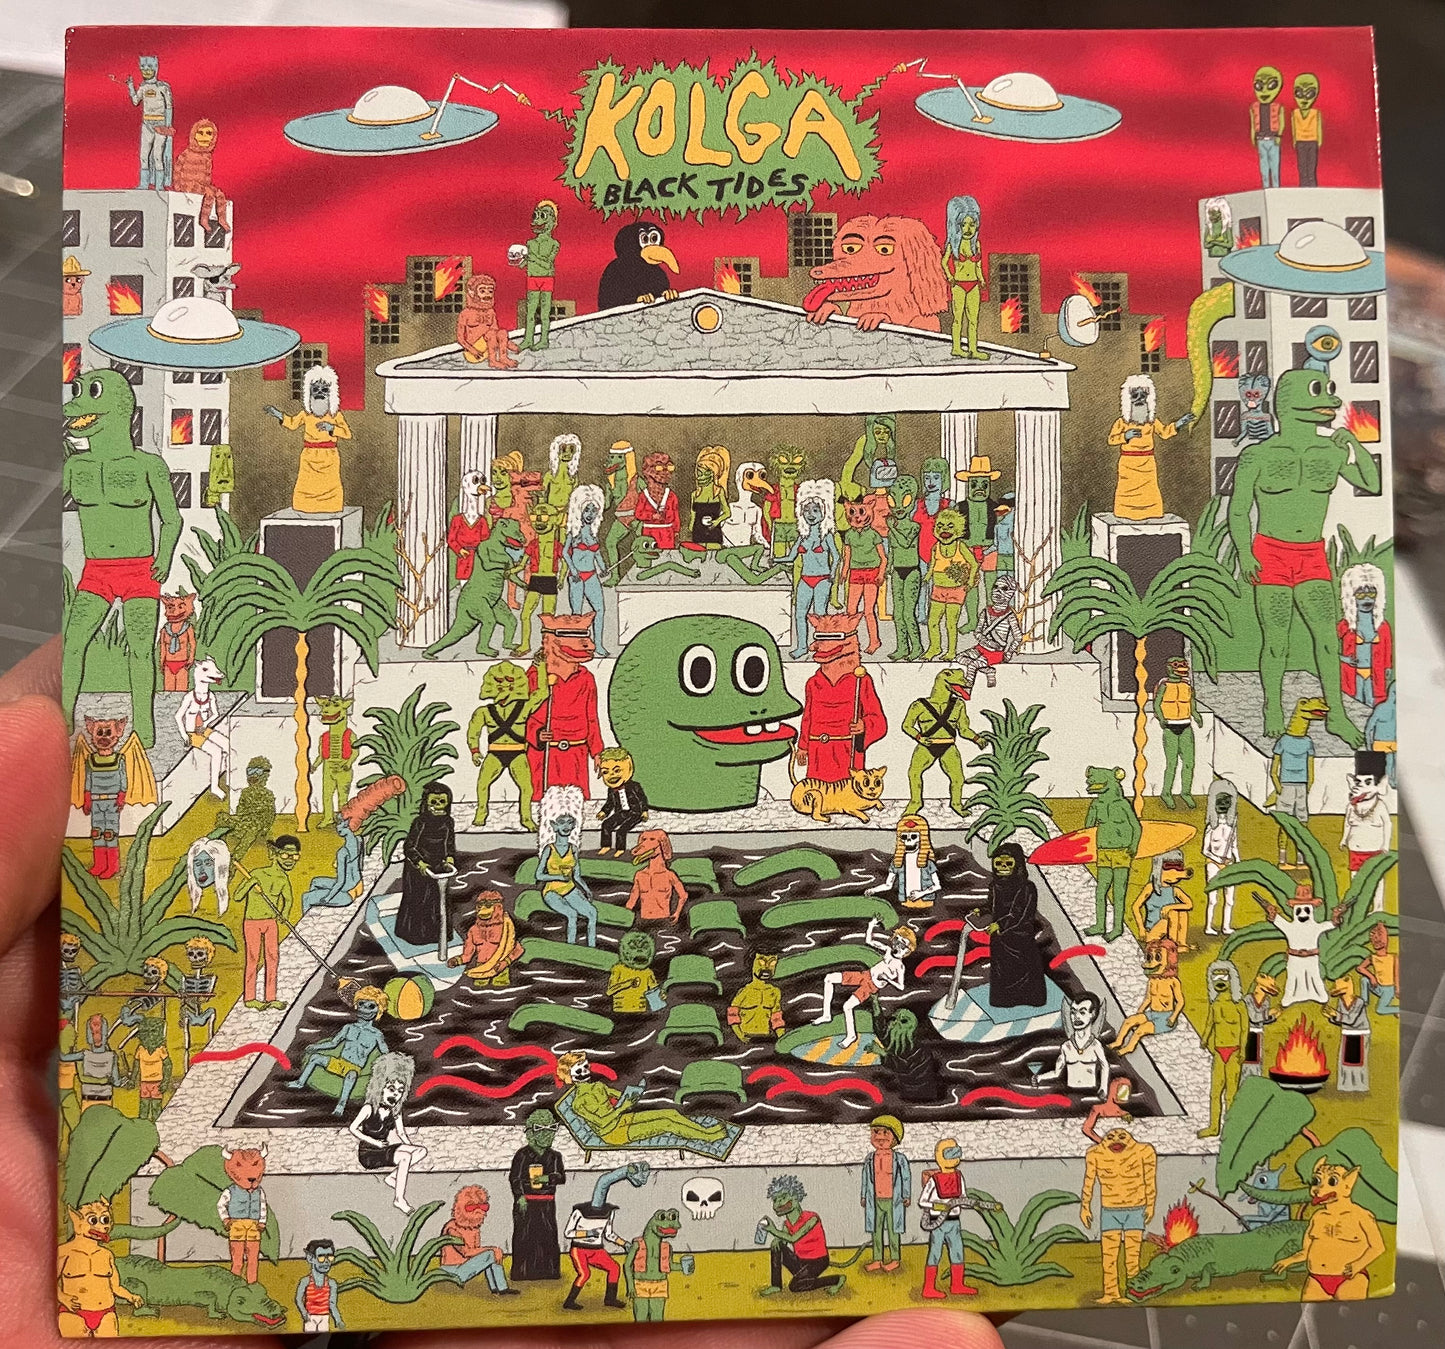 OMR-089 Kolga “Black Tides” CD (Pre-Order!)Release Date 3/29/24!